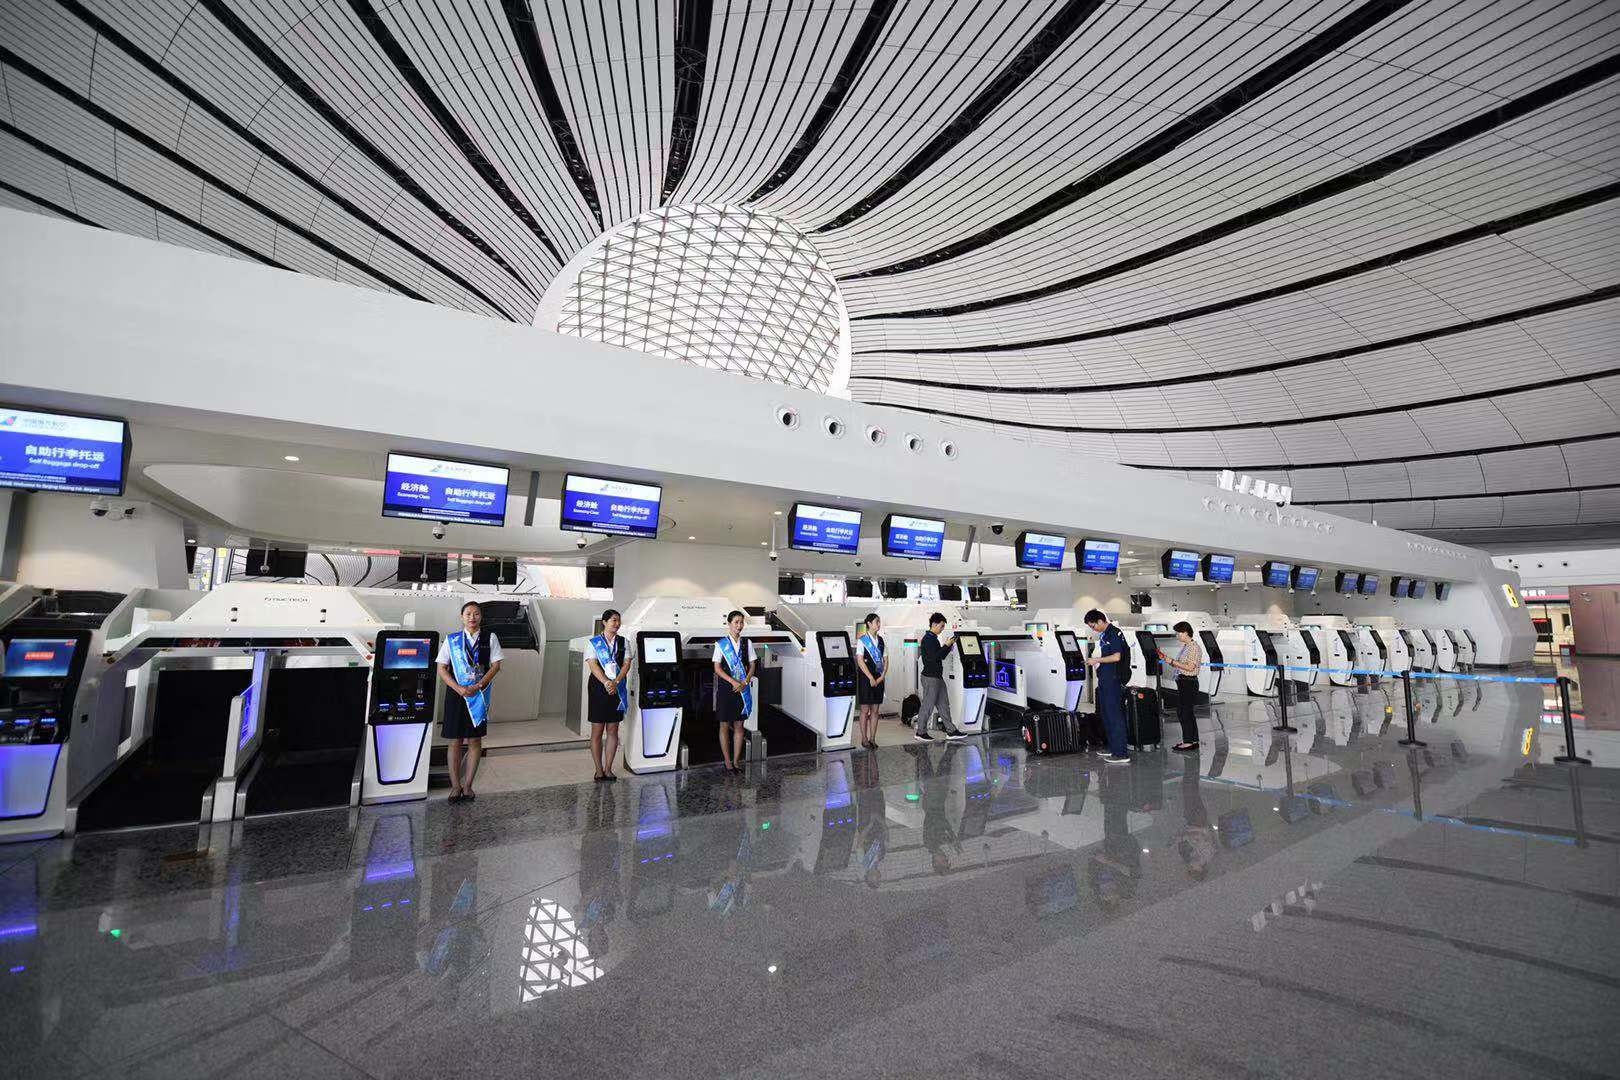 大兴机场首次综合演练1182名旅客模拟值机土耳其的国际快递